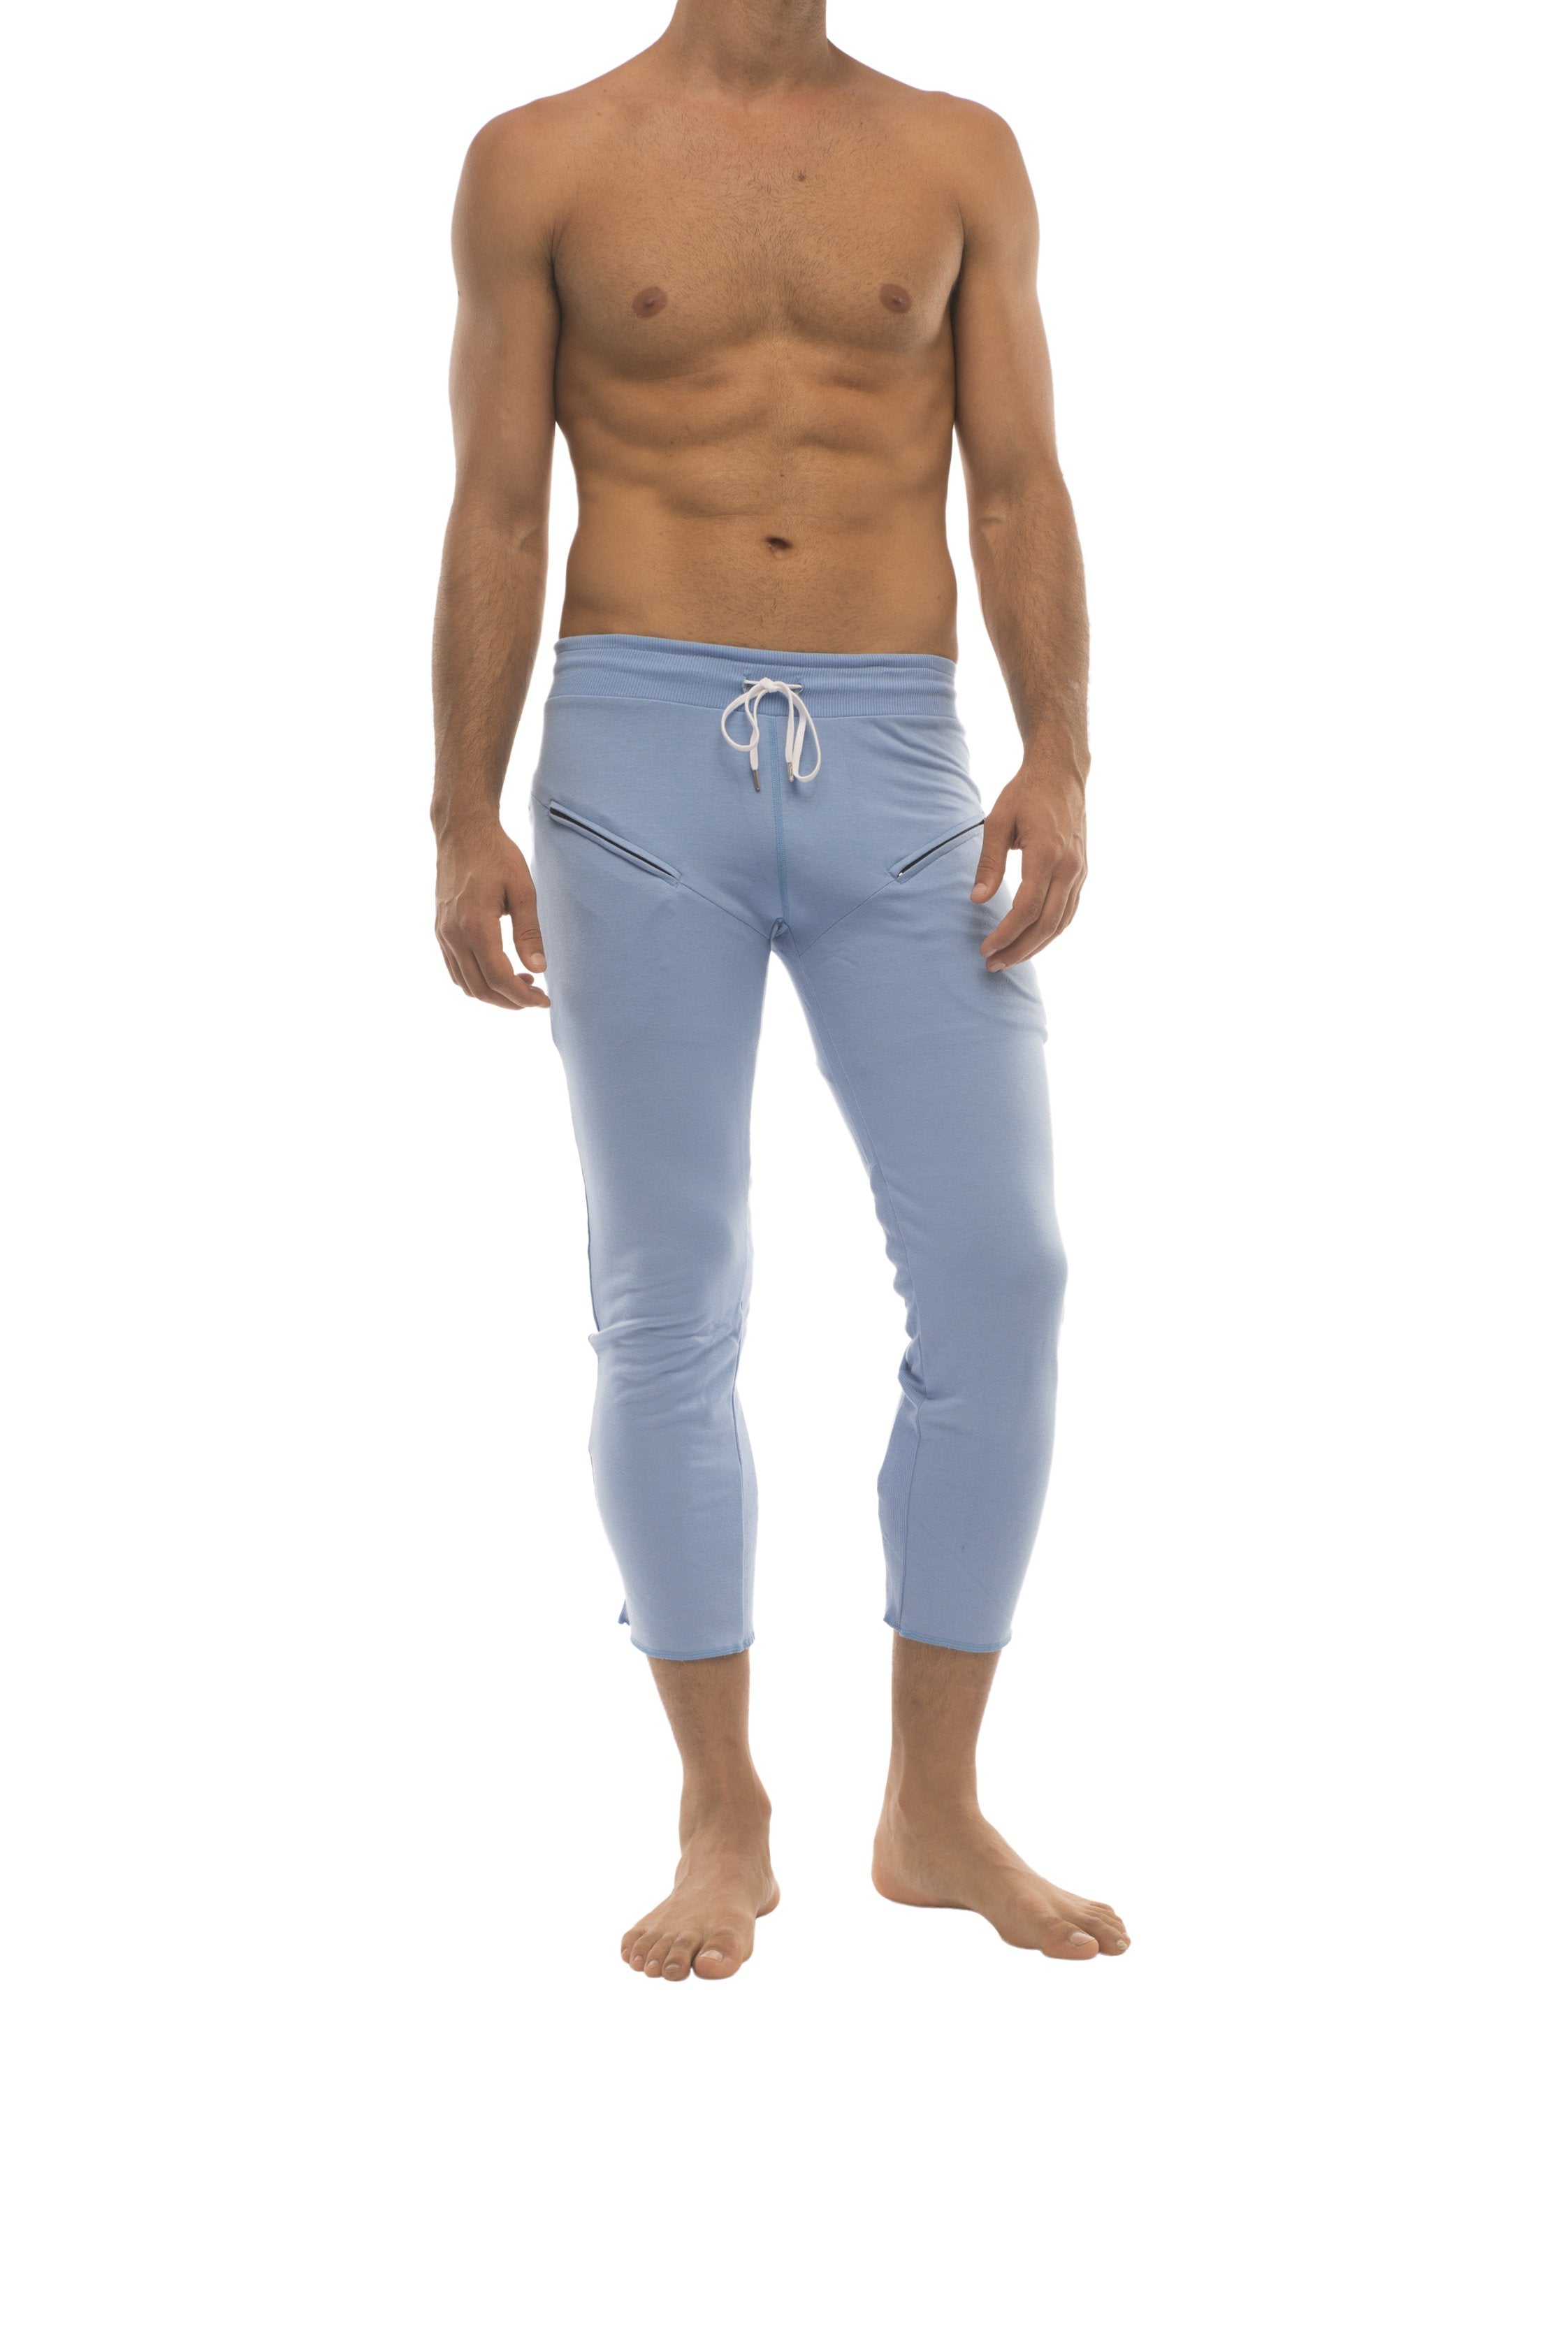 Mens 4/5 Zipper Pocket Capri Yoga Pants (Solid Black)